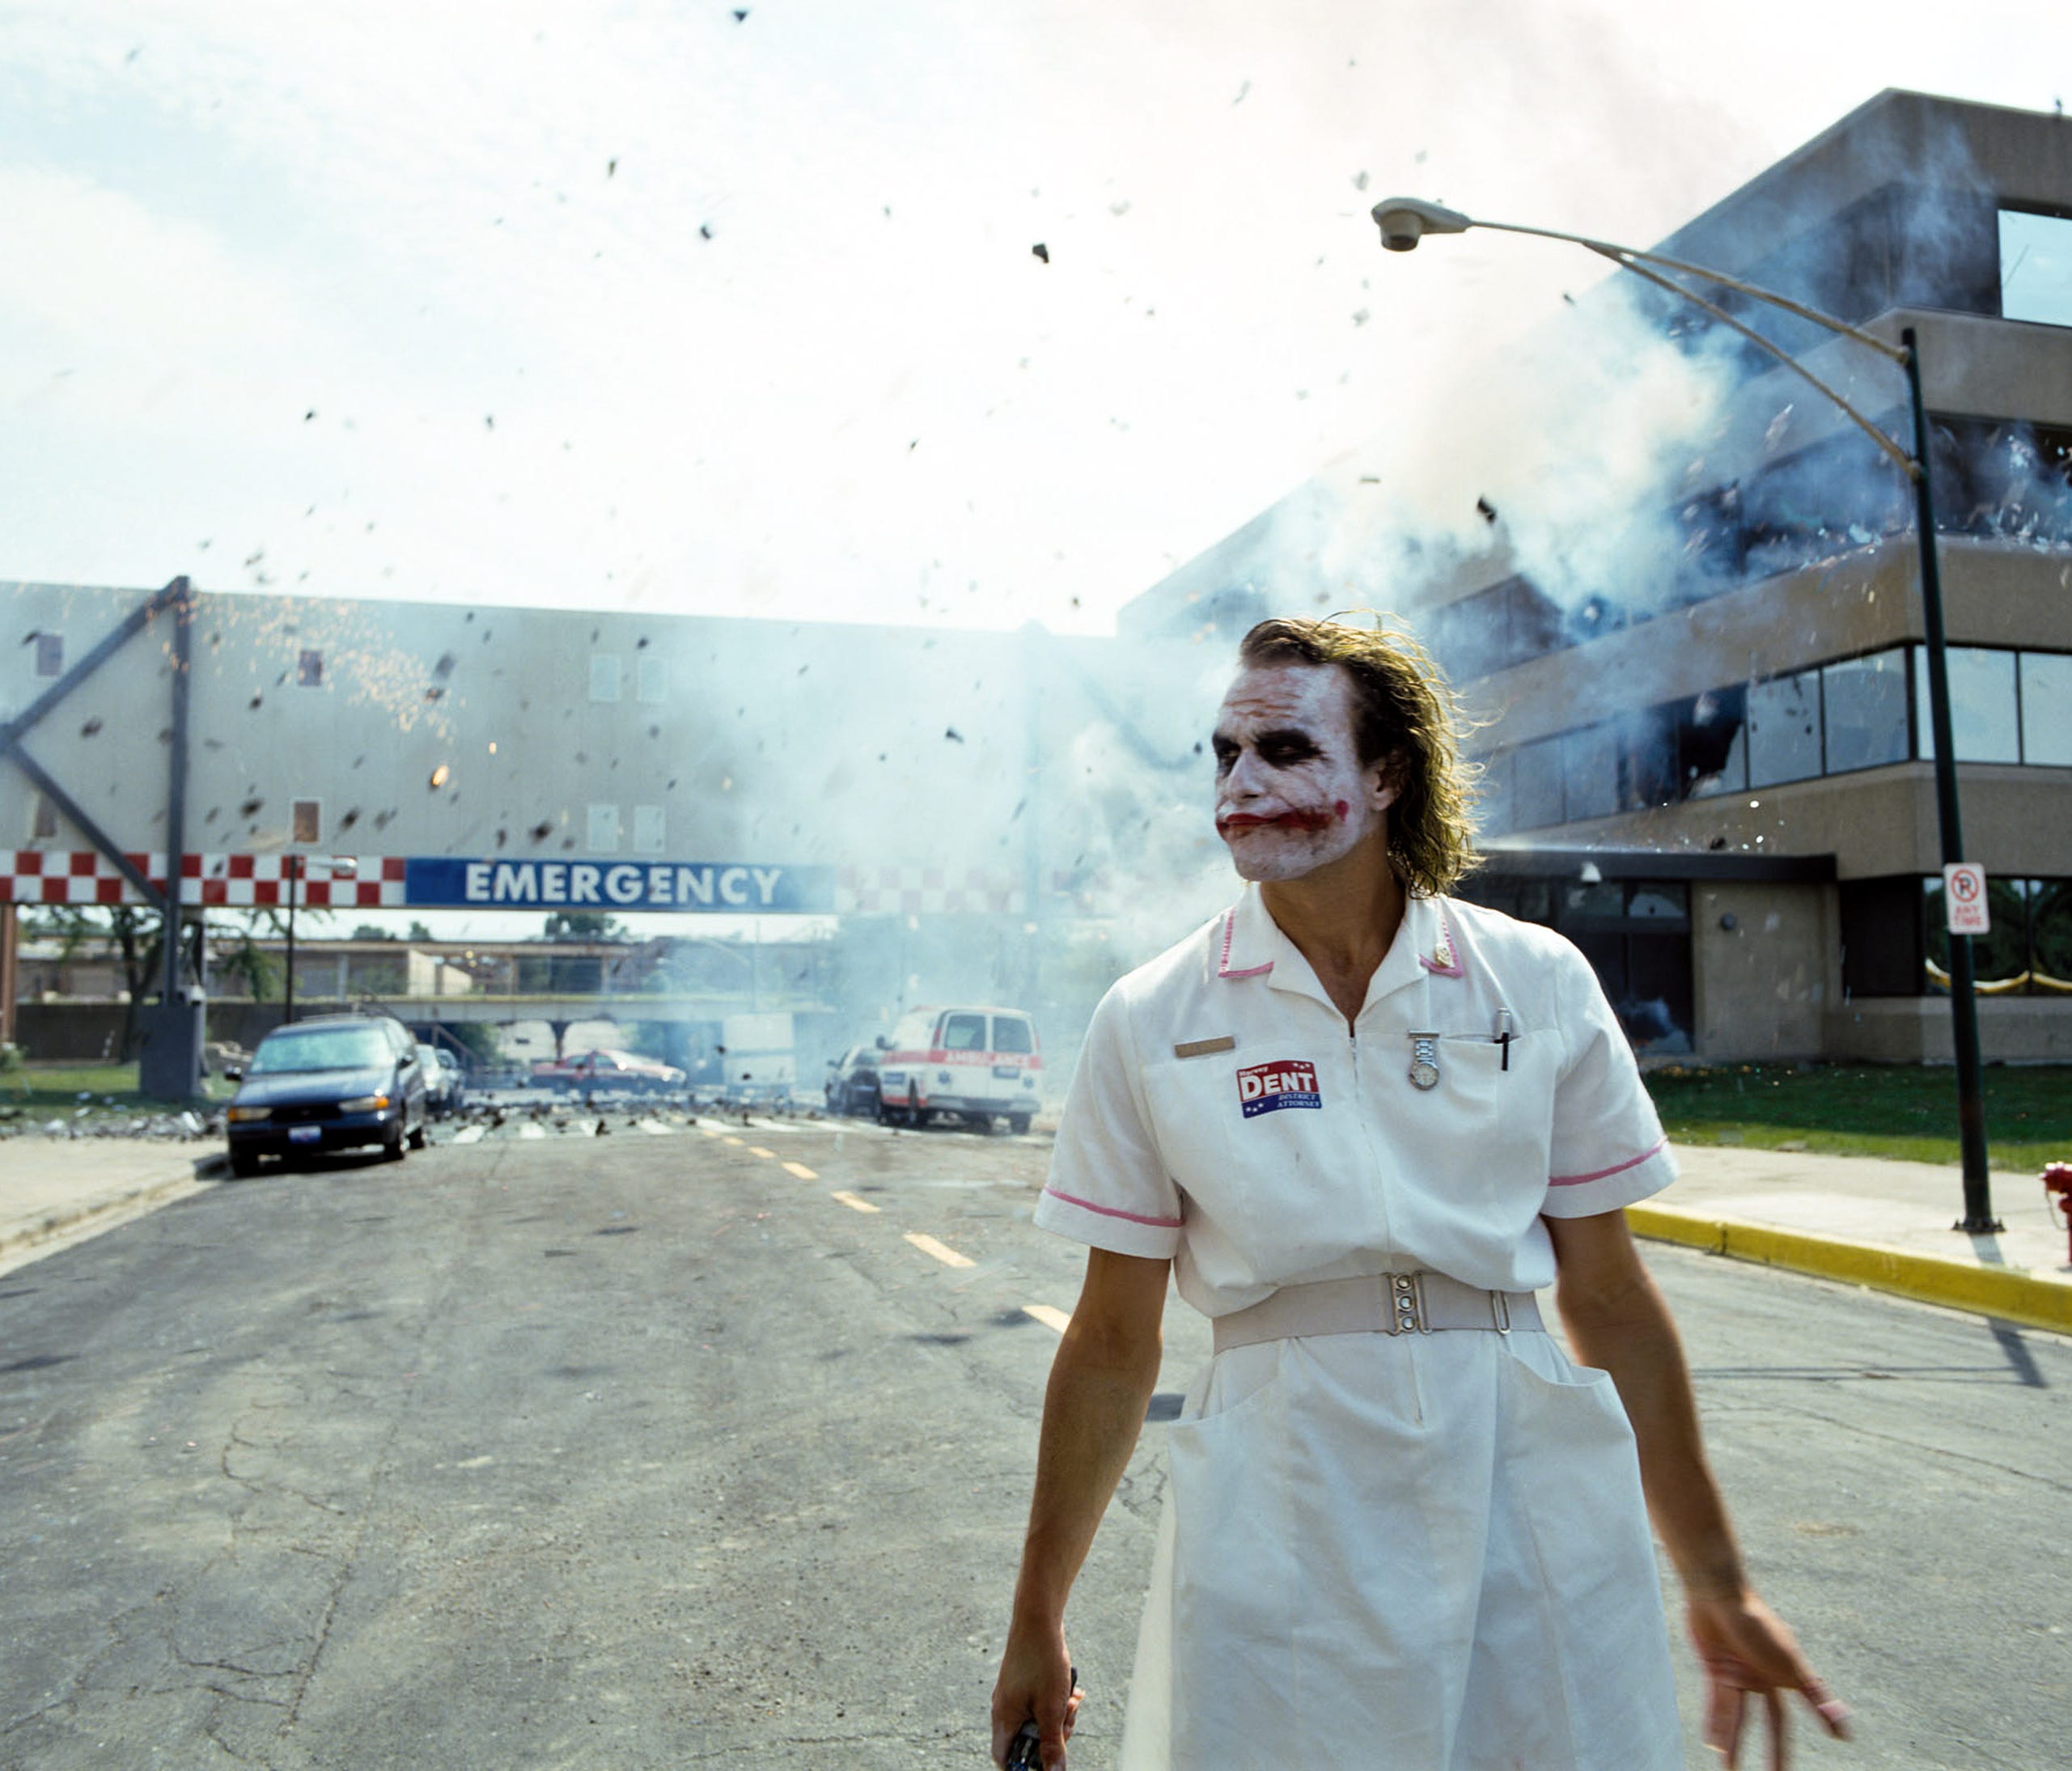 The Joker Hospital Explosion Outside (Gif) - GIF - Imgur